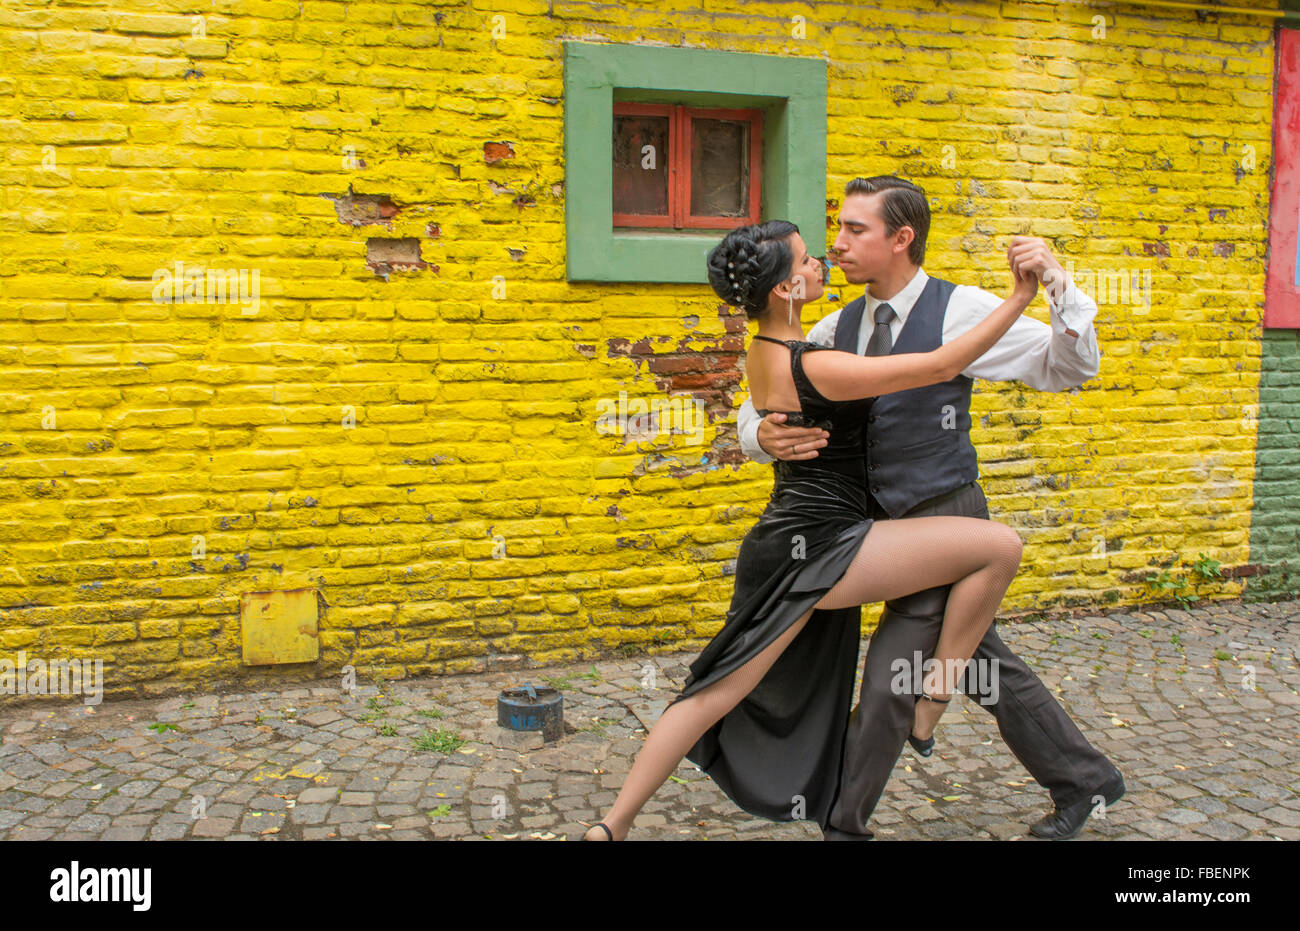 Argentinien La Boca in Buenos Aires Tango tanzen mit paar auf der Straße mit Farben getragen Wände mit Leidenschaft Modell veröffentlicht Herr MR-1 Mann Stockfoto